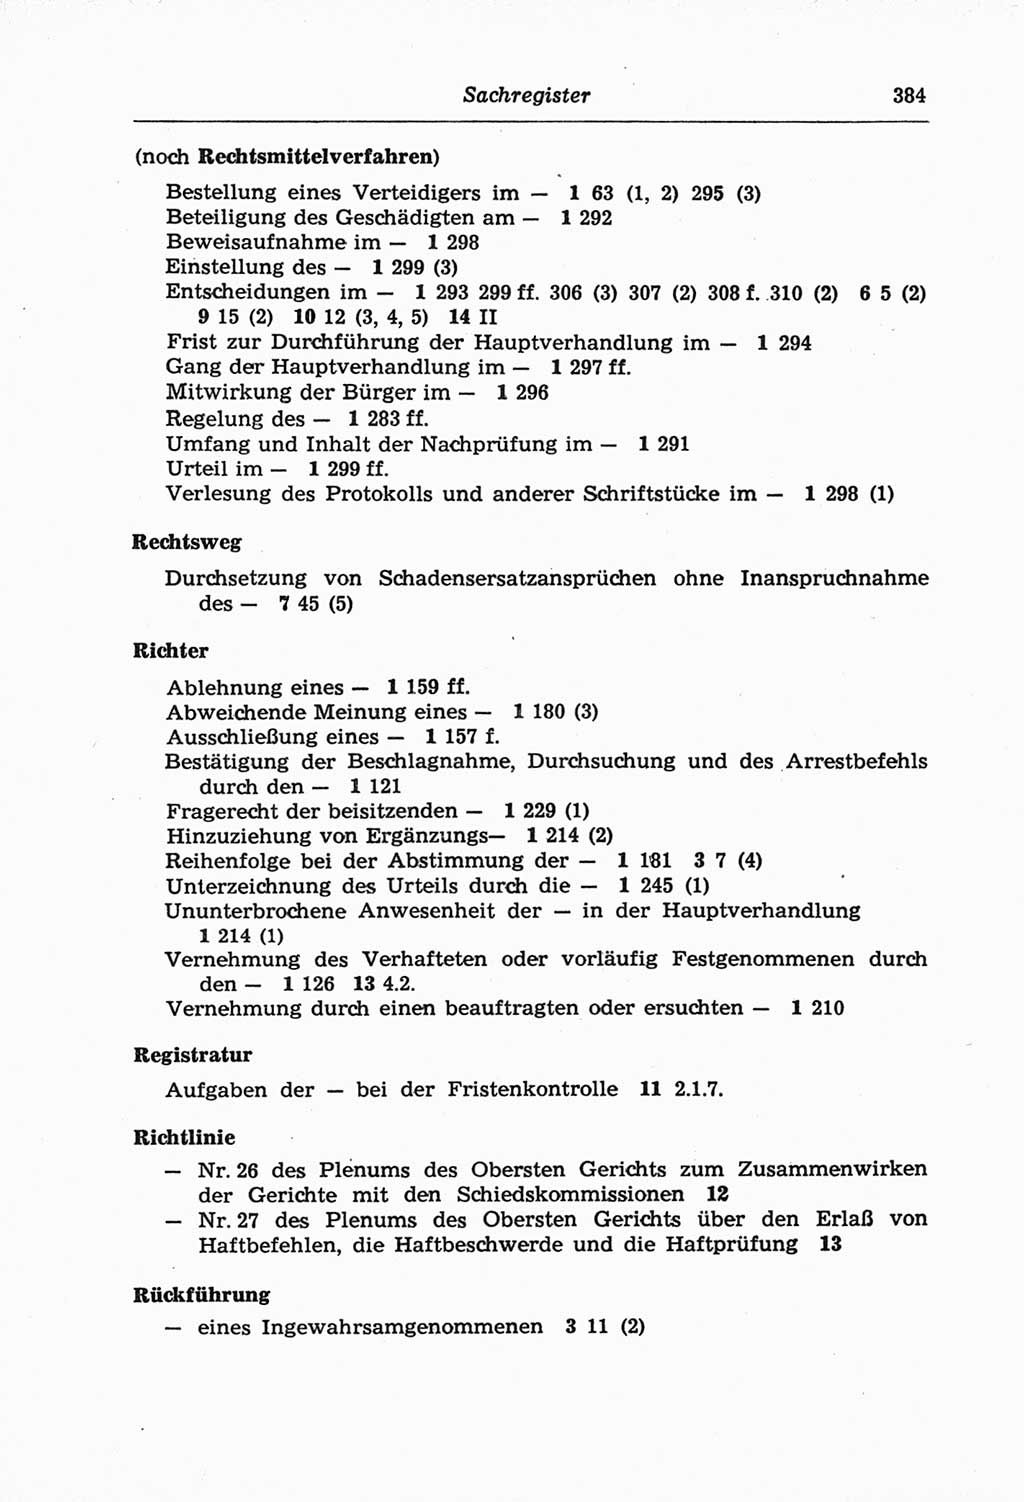 Strafprozeßordnung (StPO) der Deutschen Demokratischen Republik (DDR) und angrenzende Gesetze und Bestimmungen 1968, Seite 384 (StPO Ges. Bstgn. DDR 1968, S. 384)